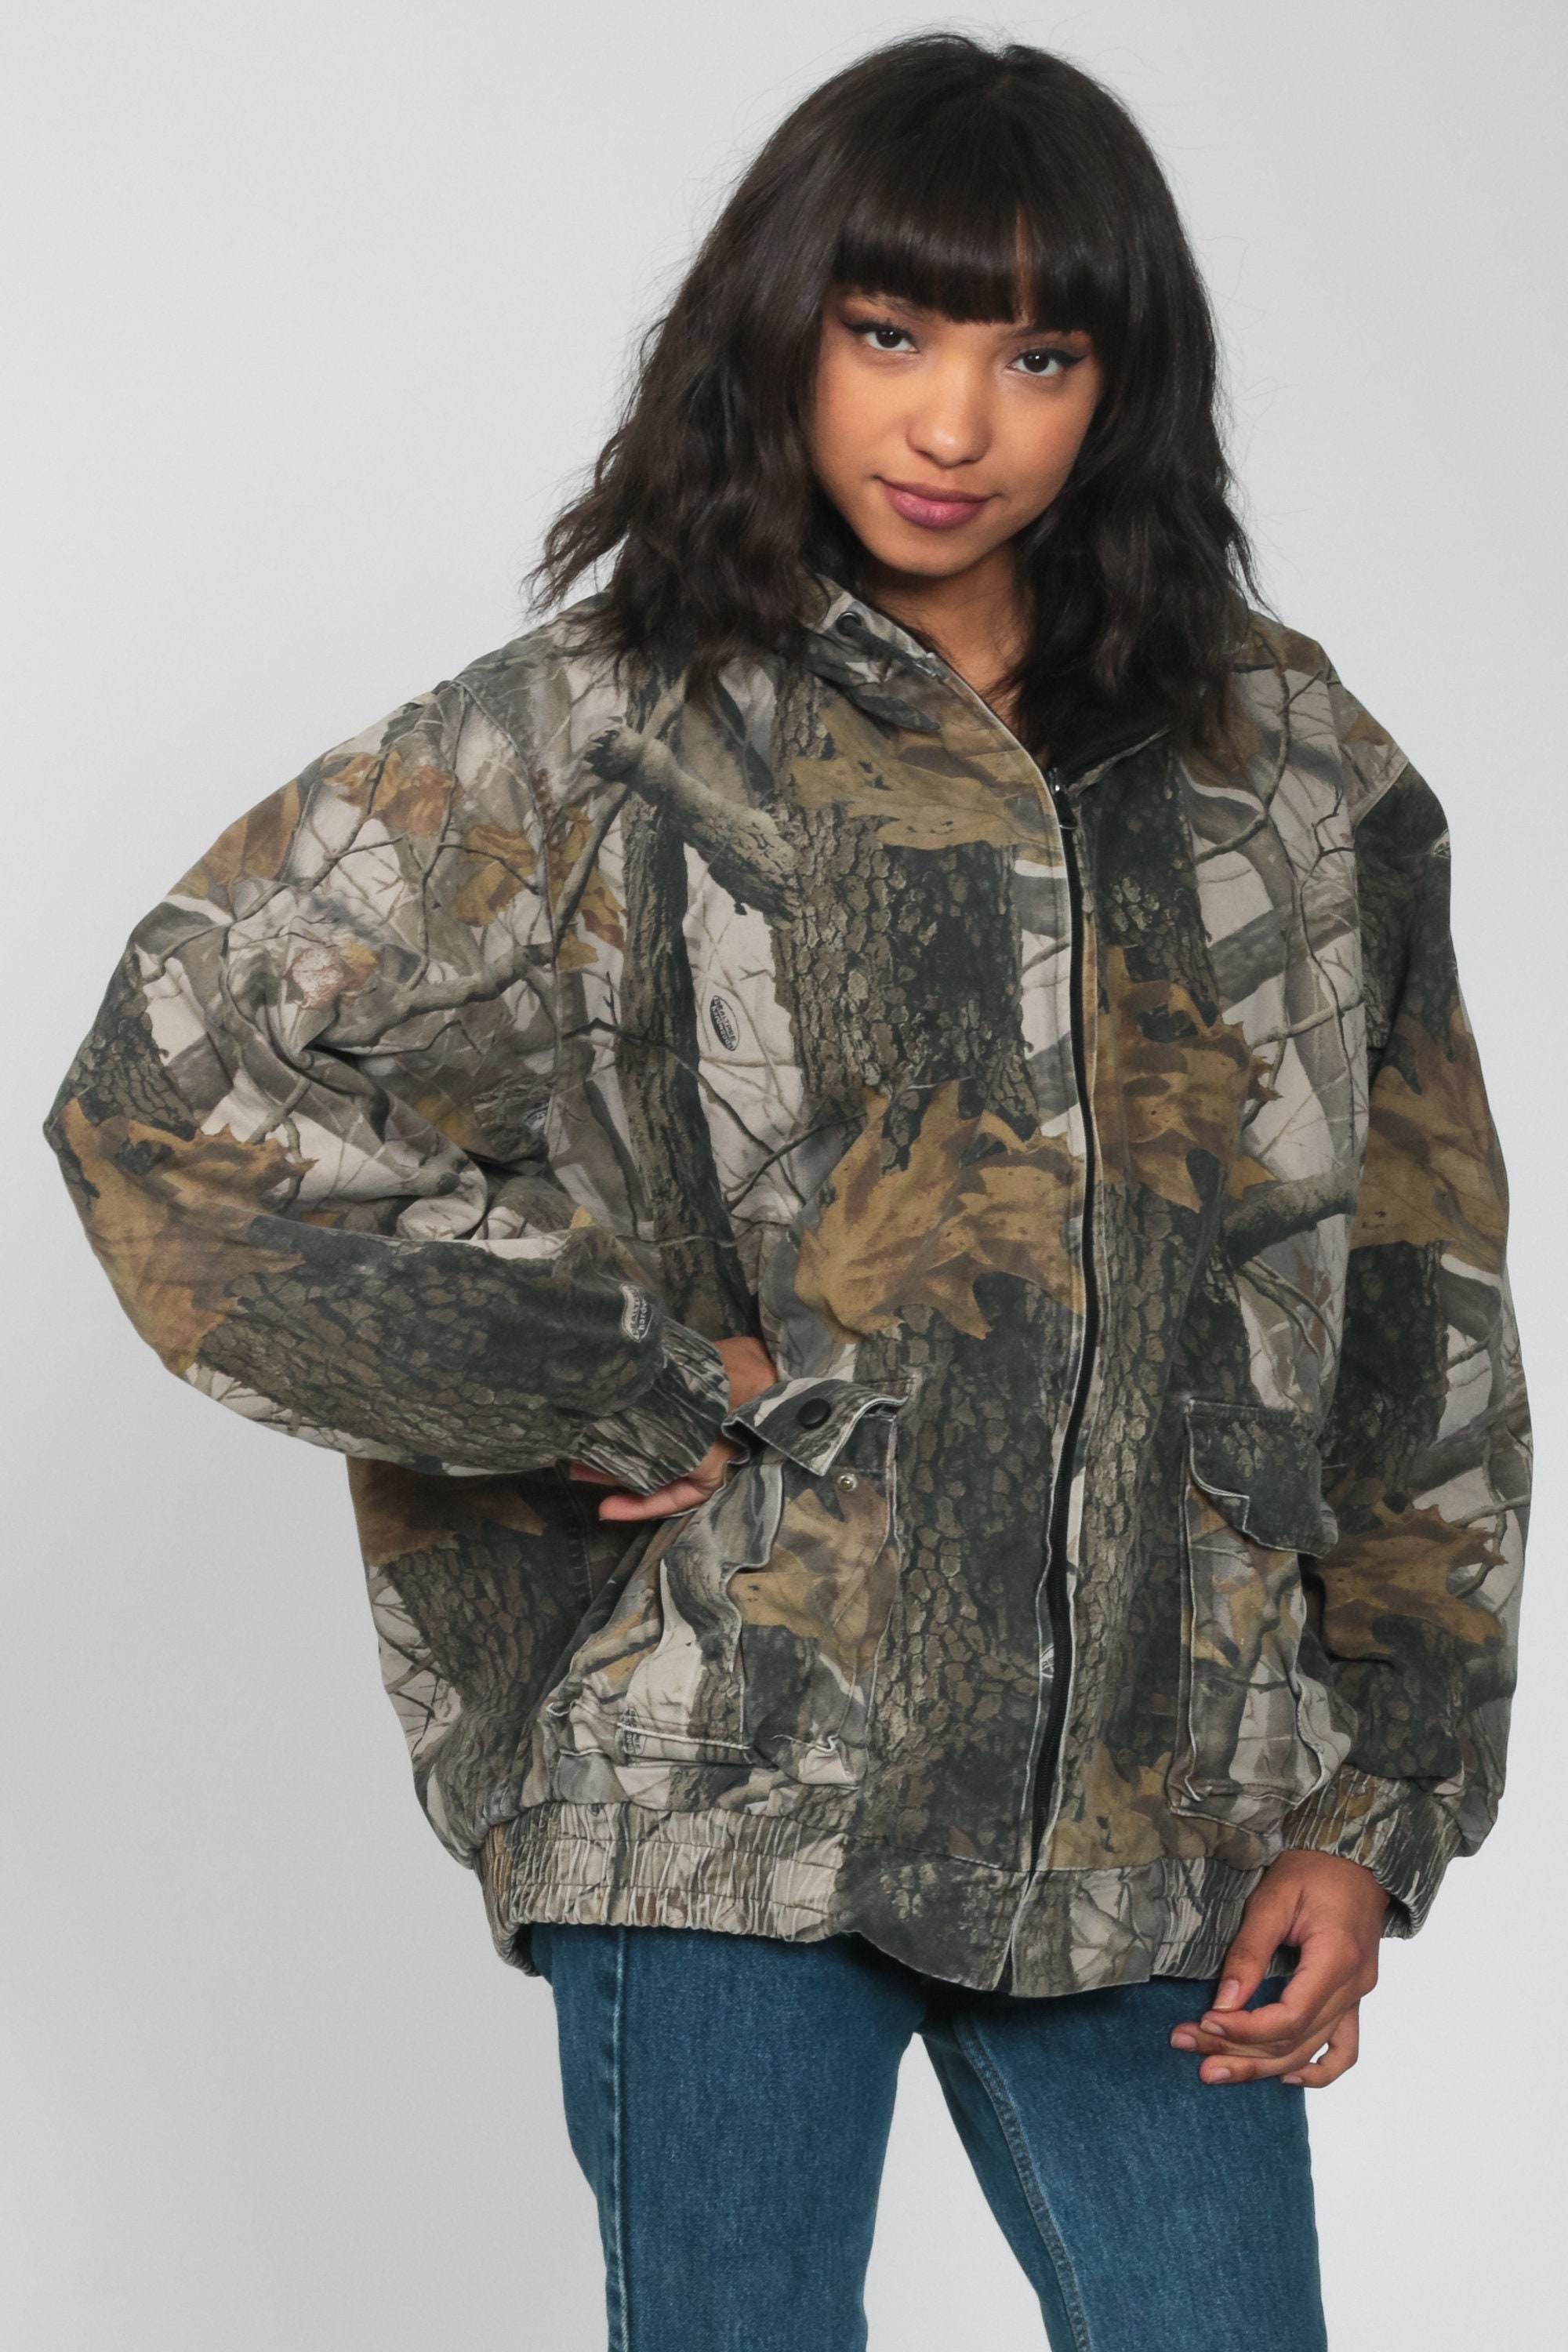 Camouflage Jacket Hooded Hunting Jacket Realtree Hardwood Jacket 90s